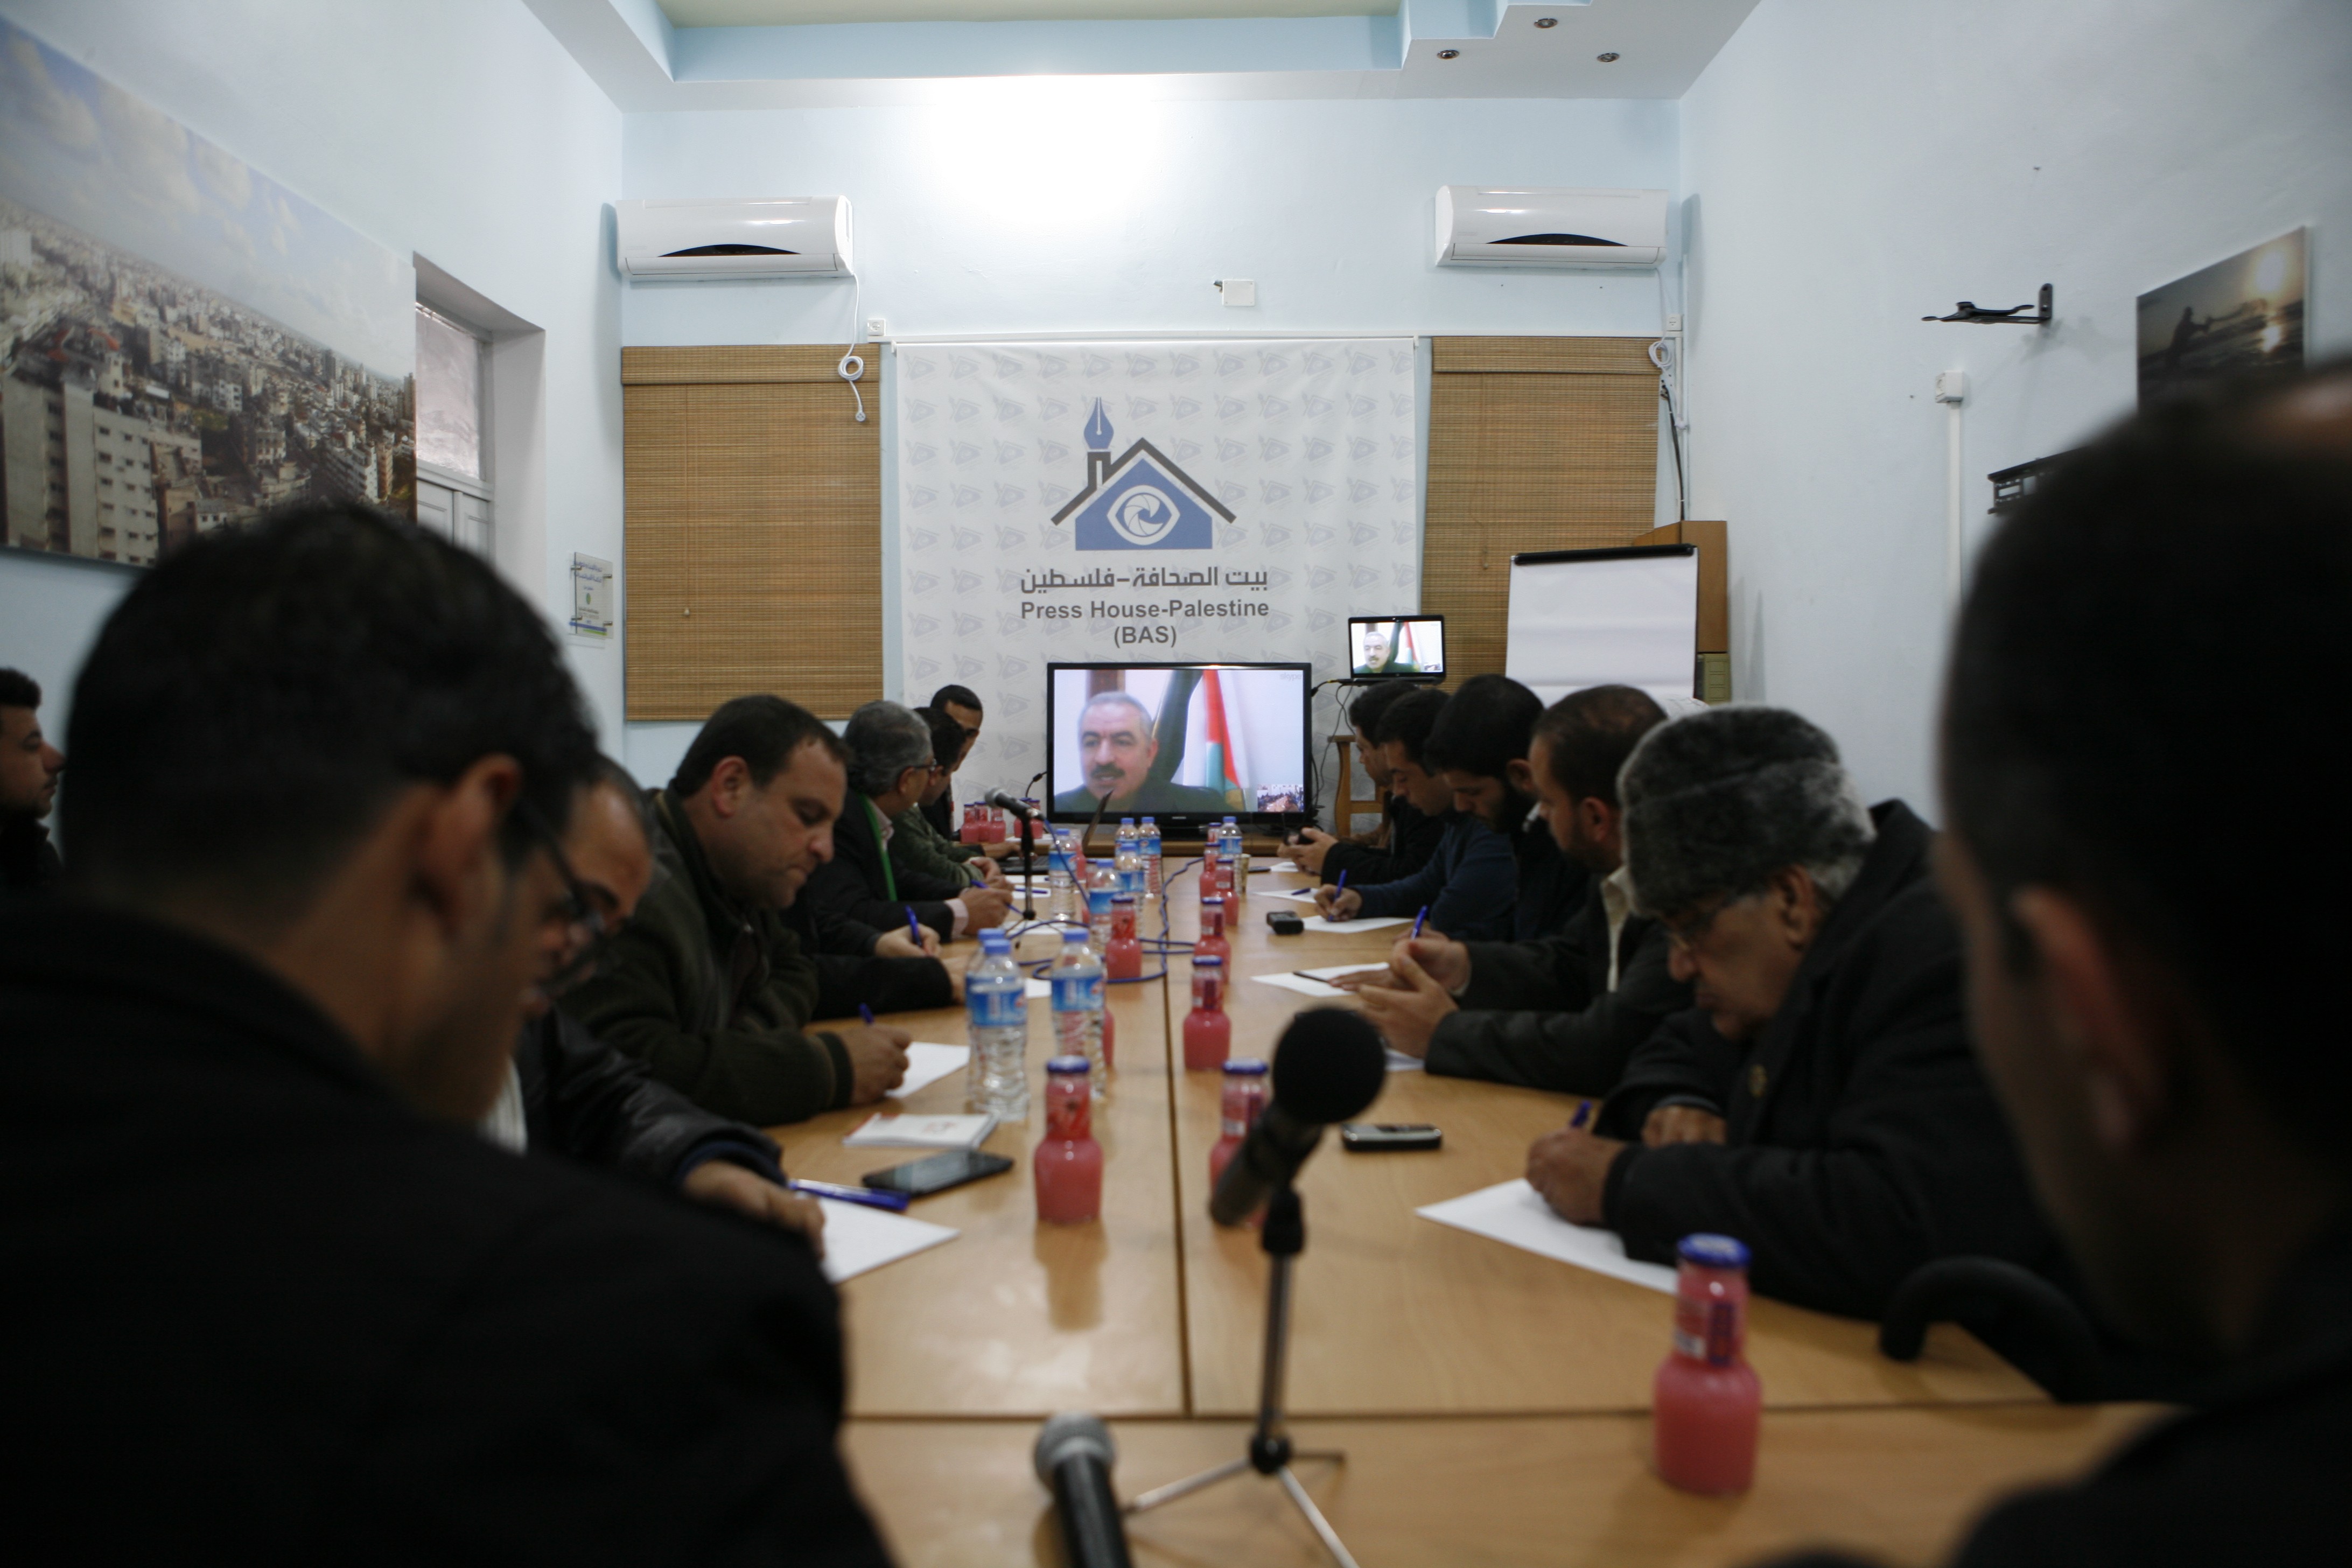 بيت الصحافة تنظم لقاءً خاصا للصحفيين مع عضو اللجنة المركزية لحركة"فتح"د.محمد اشتيه